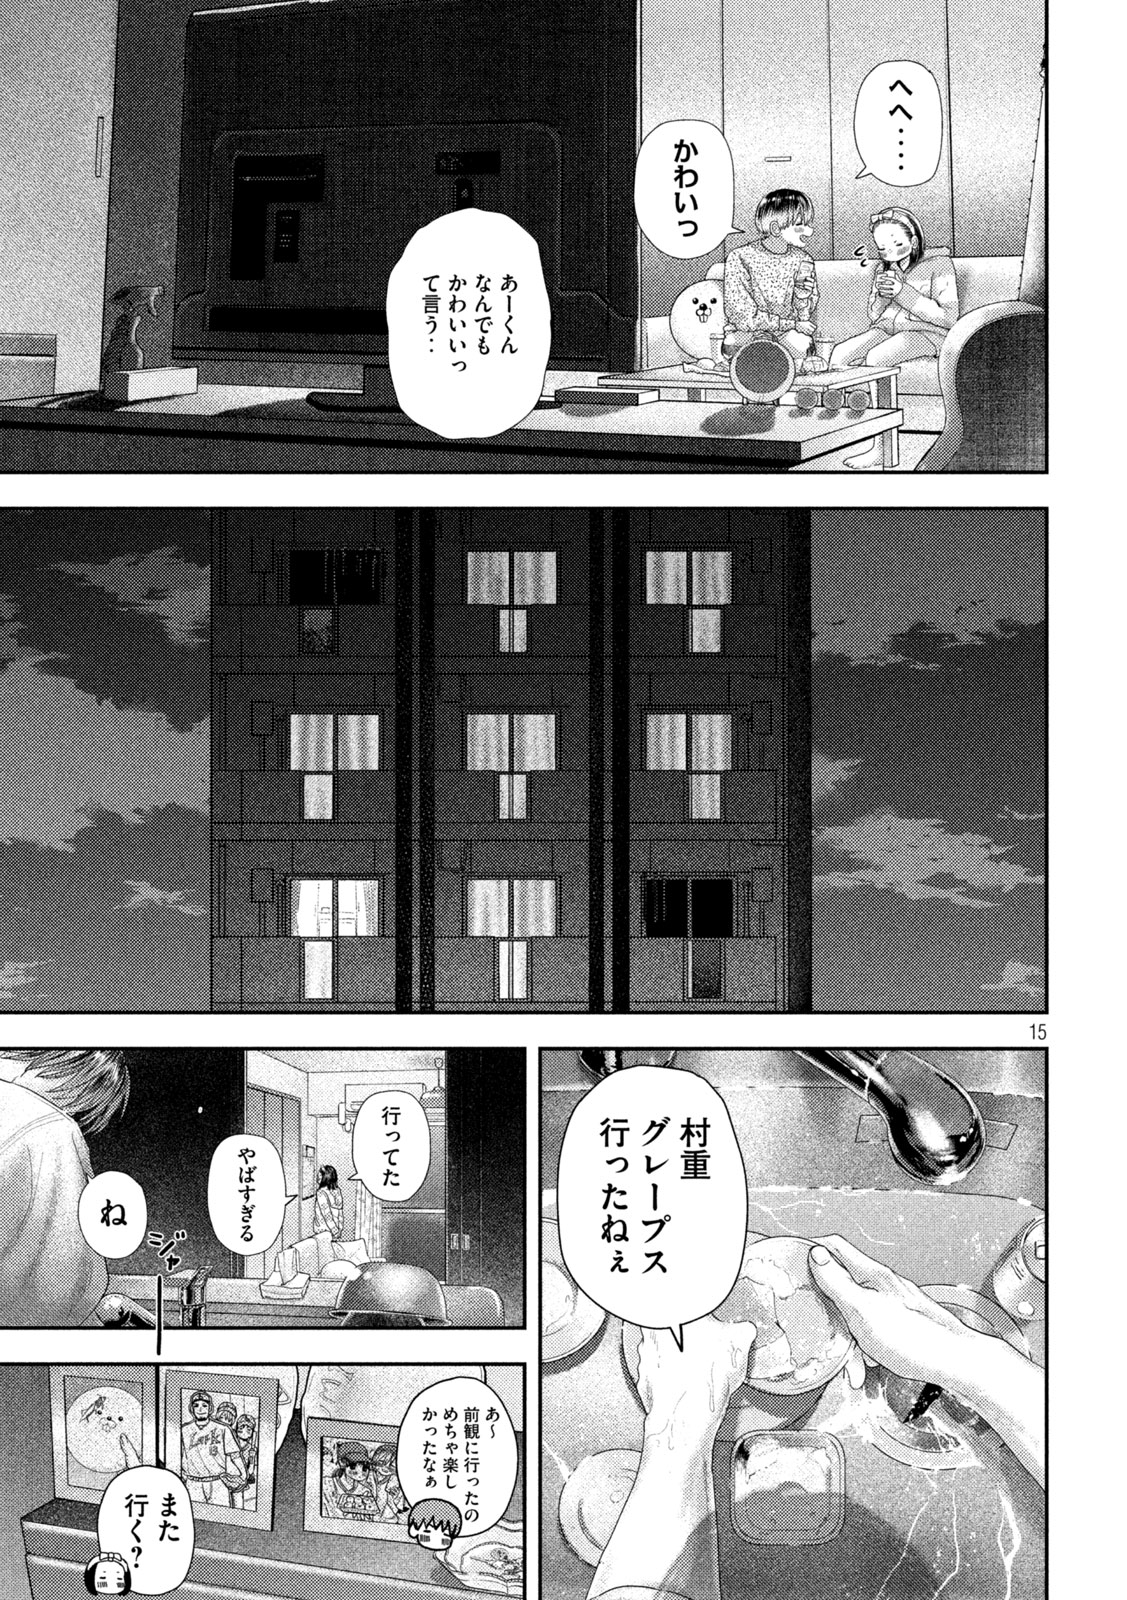 Nezumi no Koi - Chapter 29 - Page 16